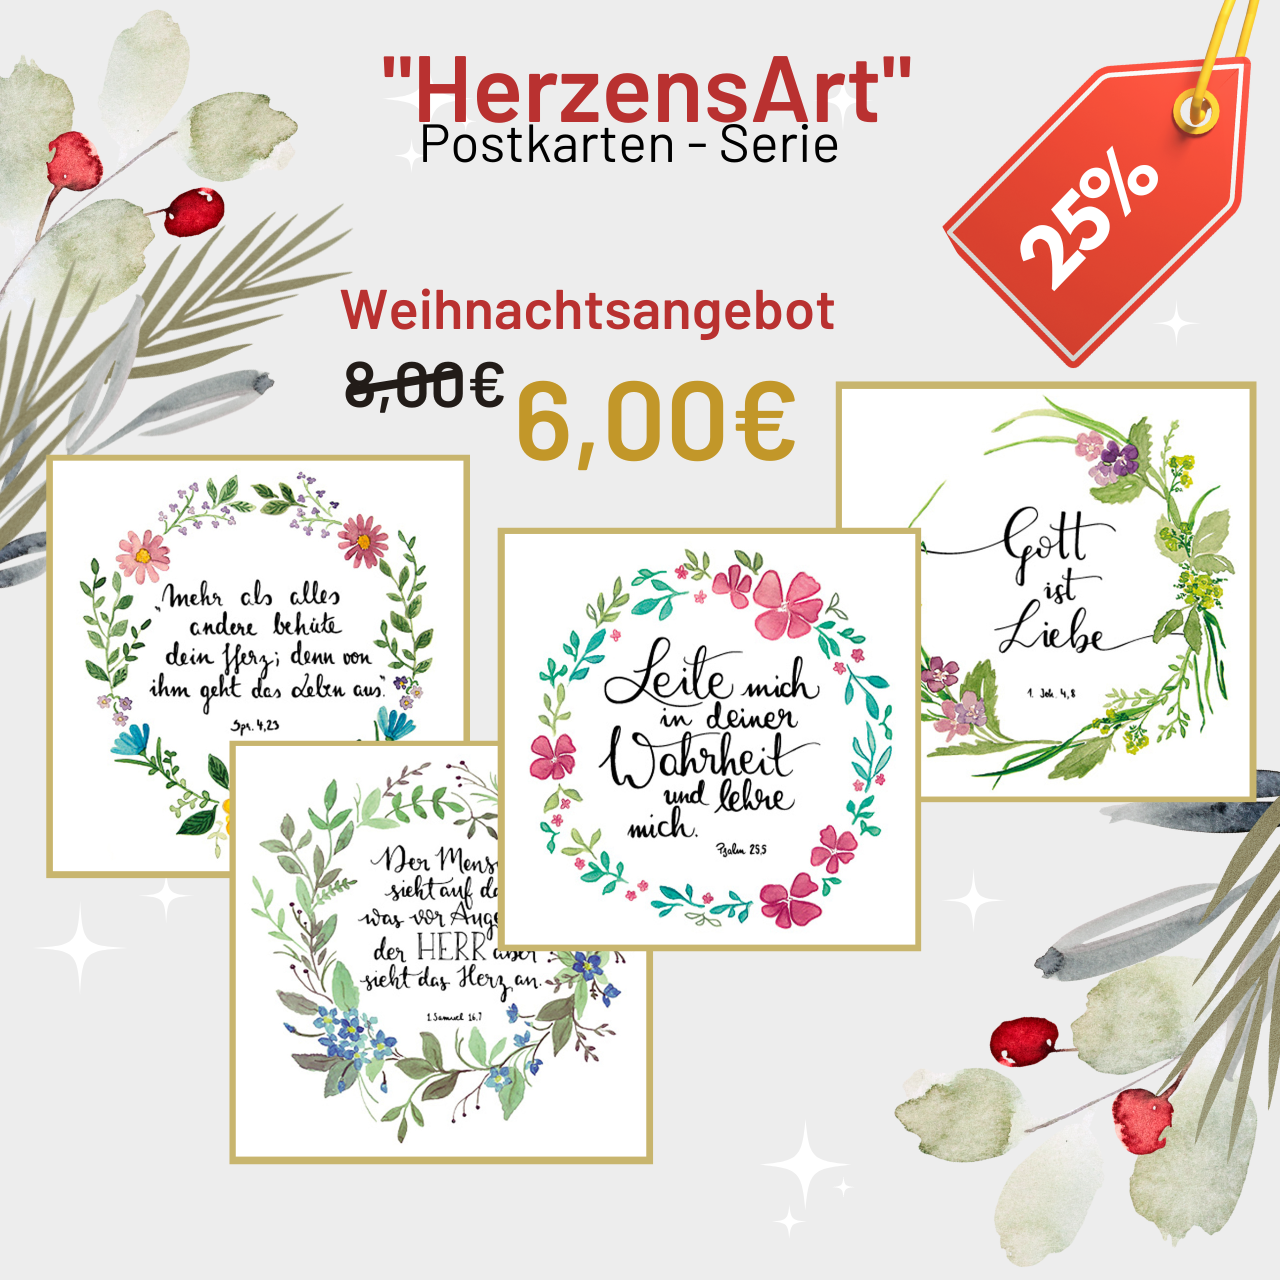 "HerzensArt" Serie (Postkarten)